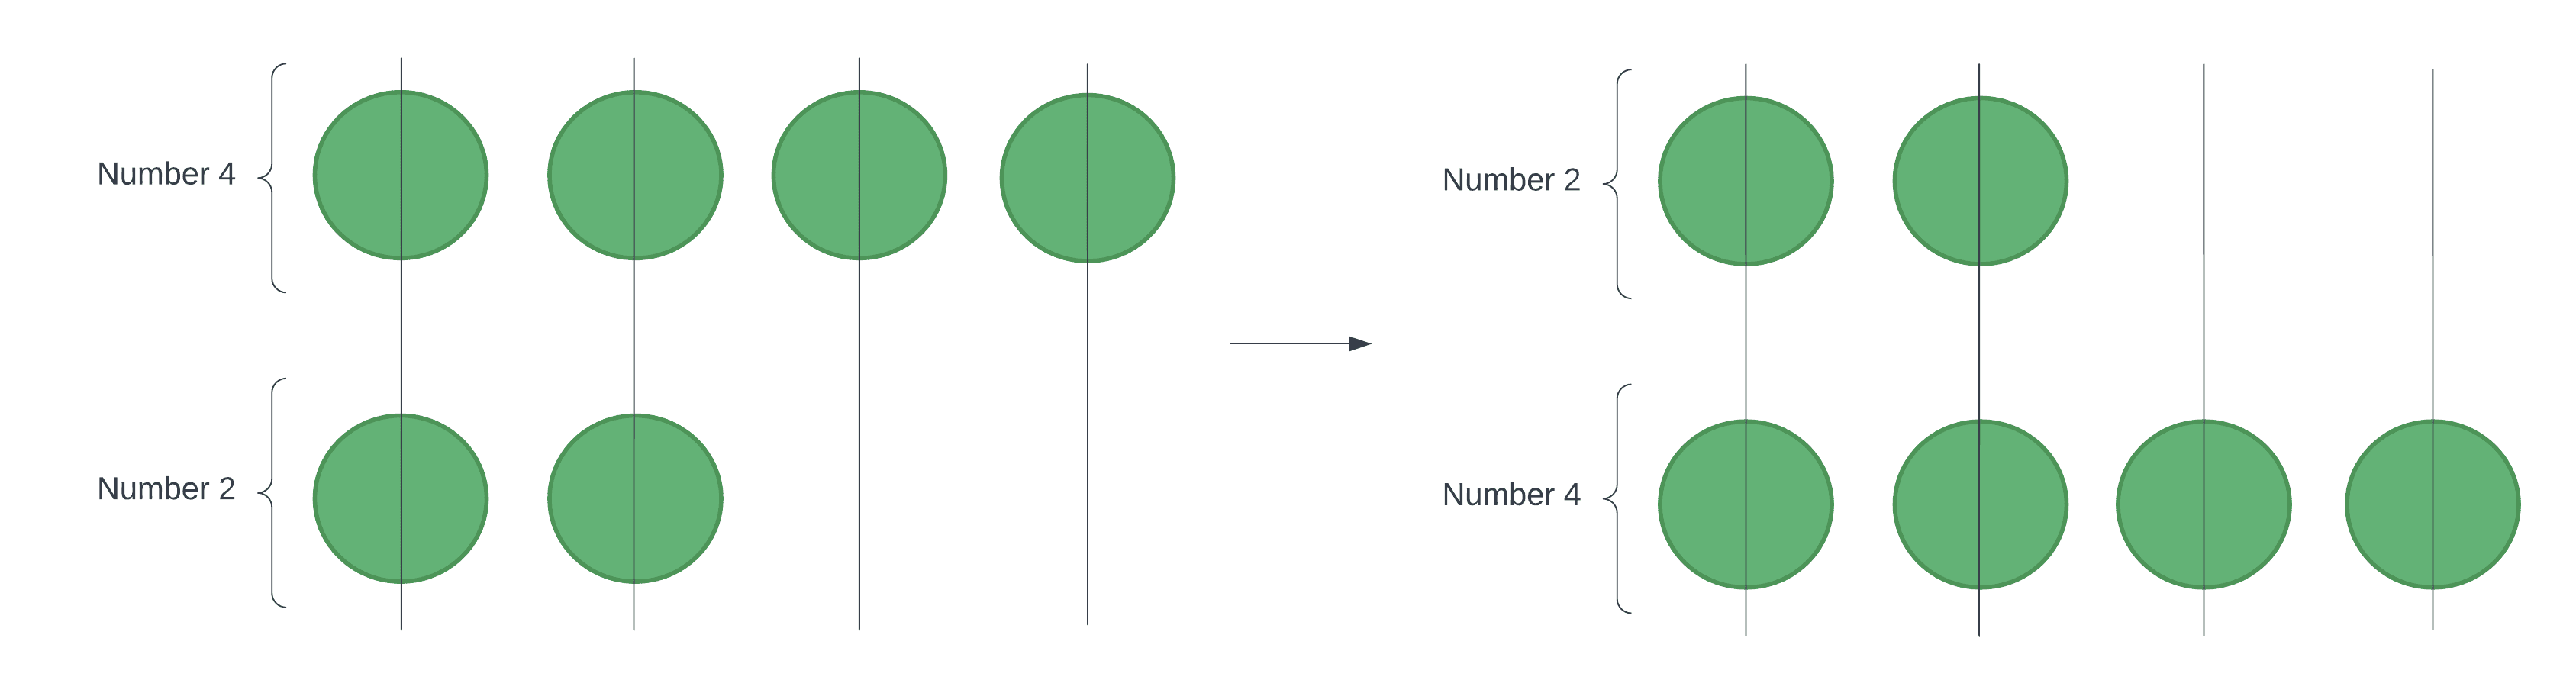 Gravity Sort in Java Diagram